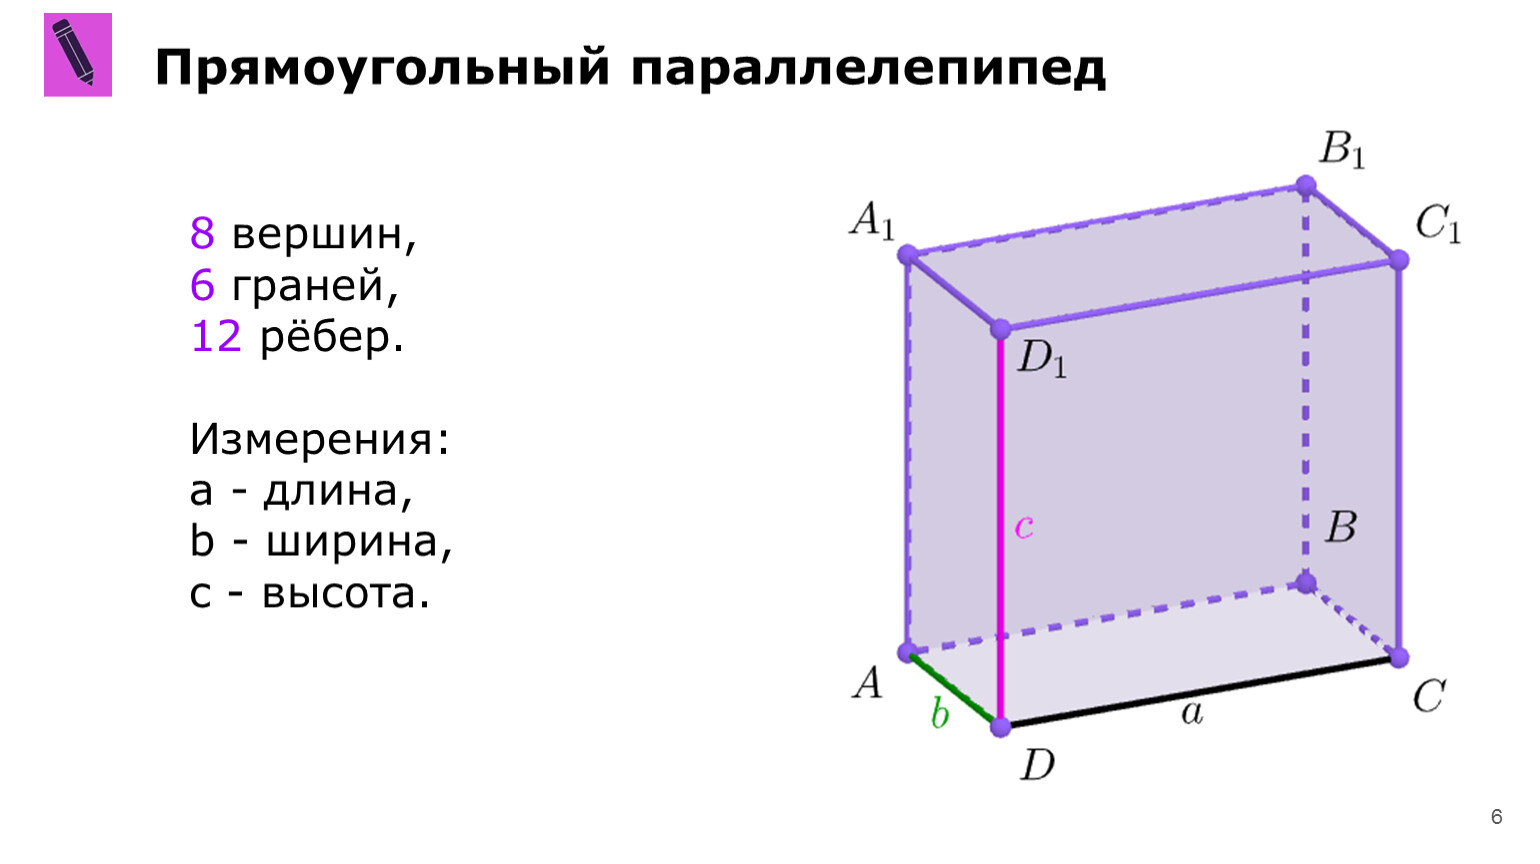 На рисунке изображены два прямоугольных параллелепипеда